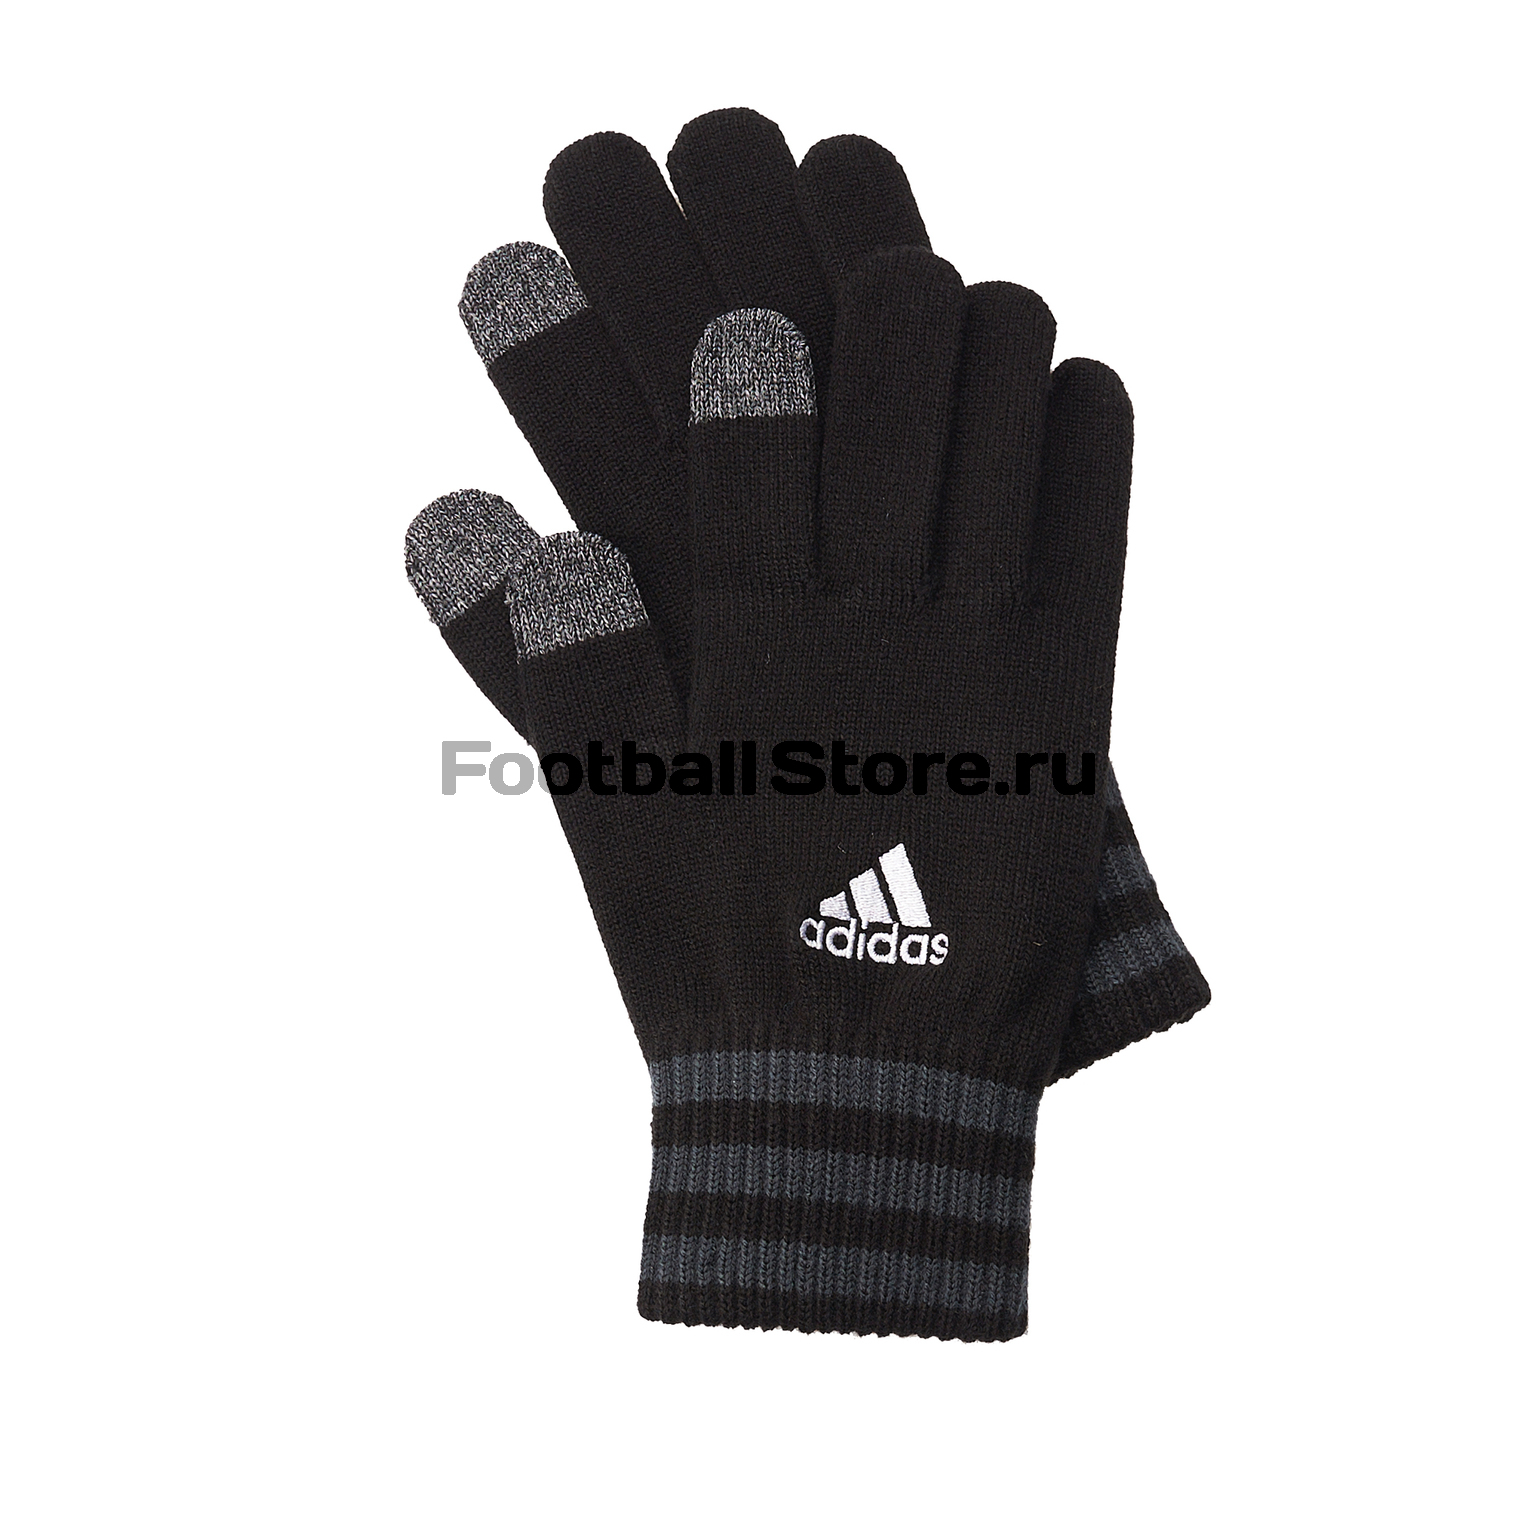 Перчатки тренировочные Adidas Tiro Glove B46135